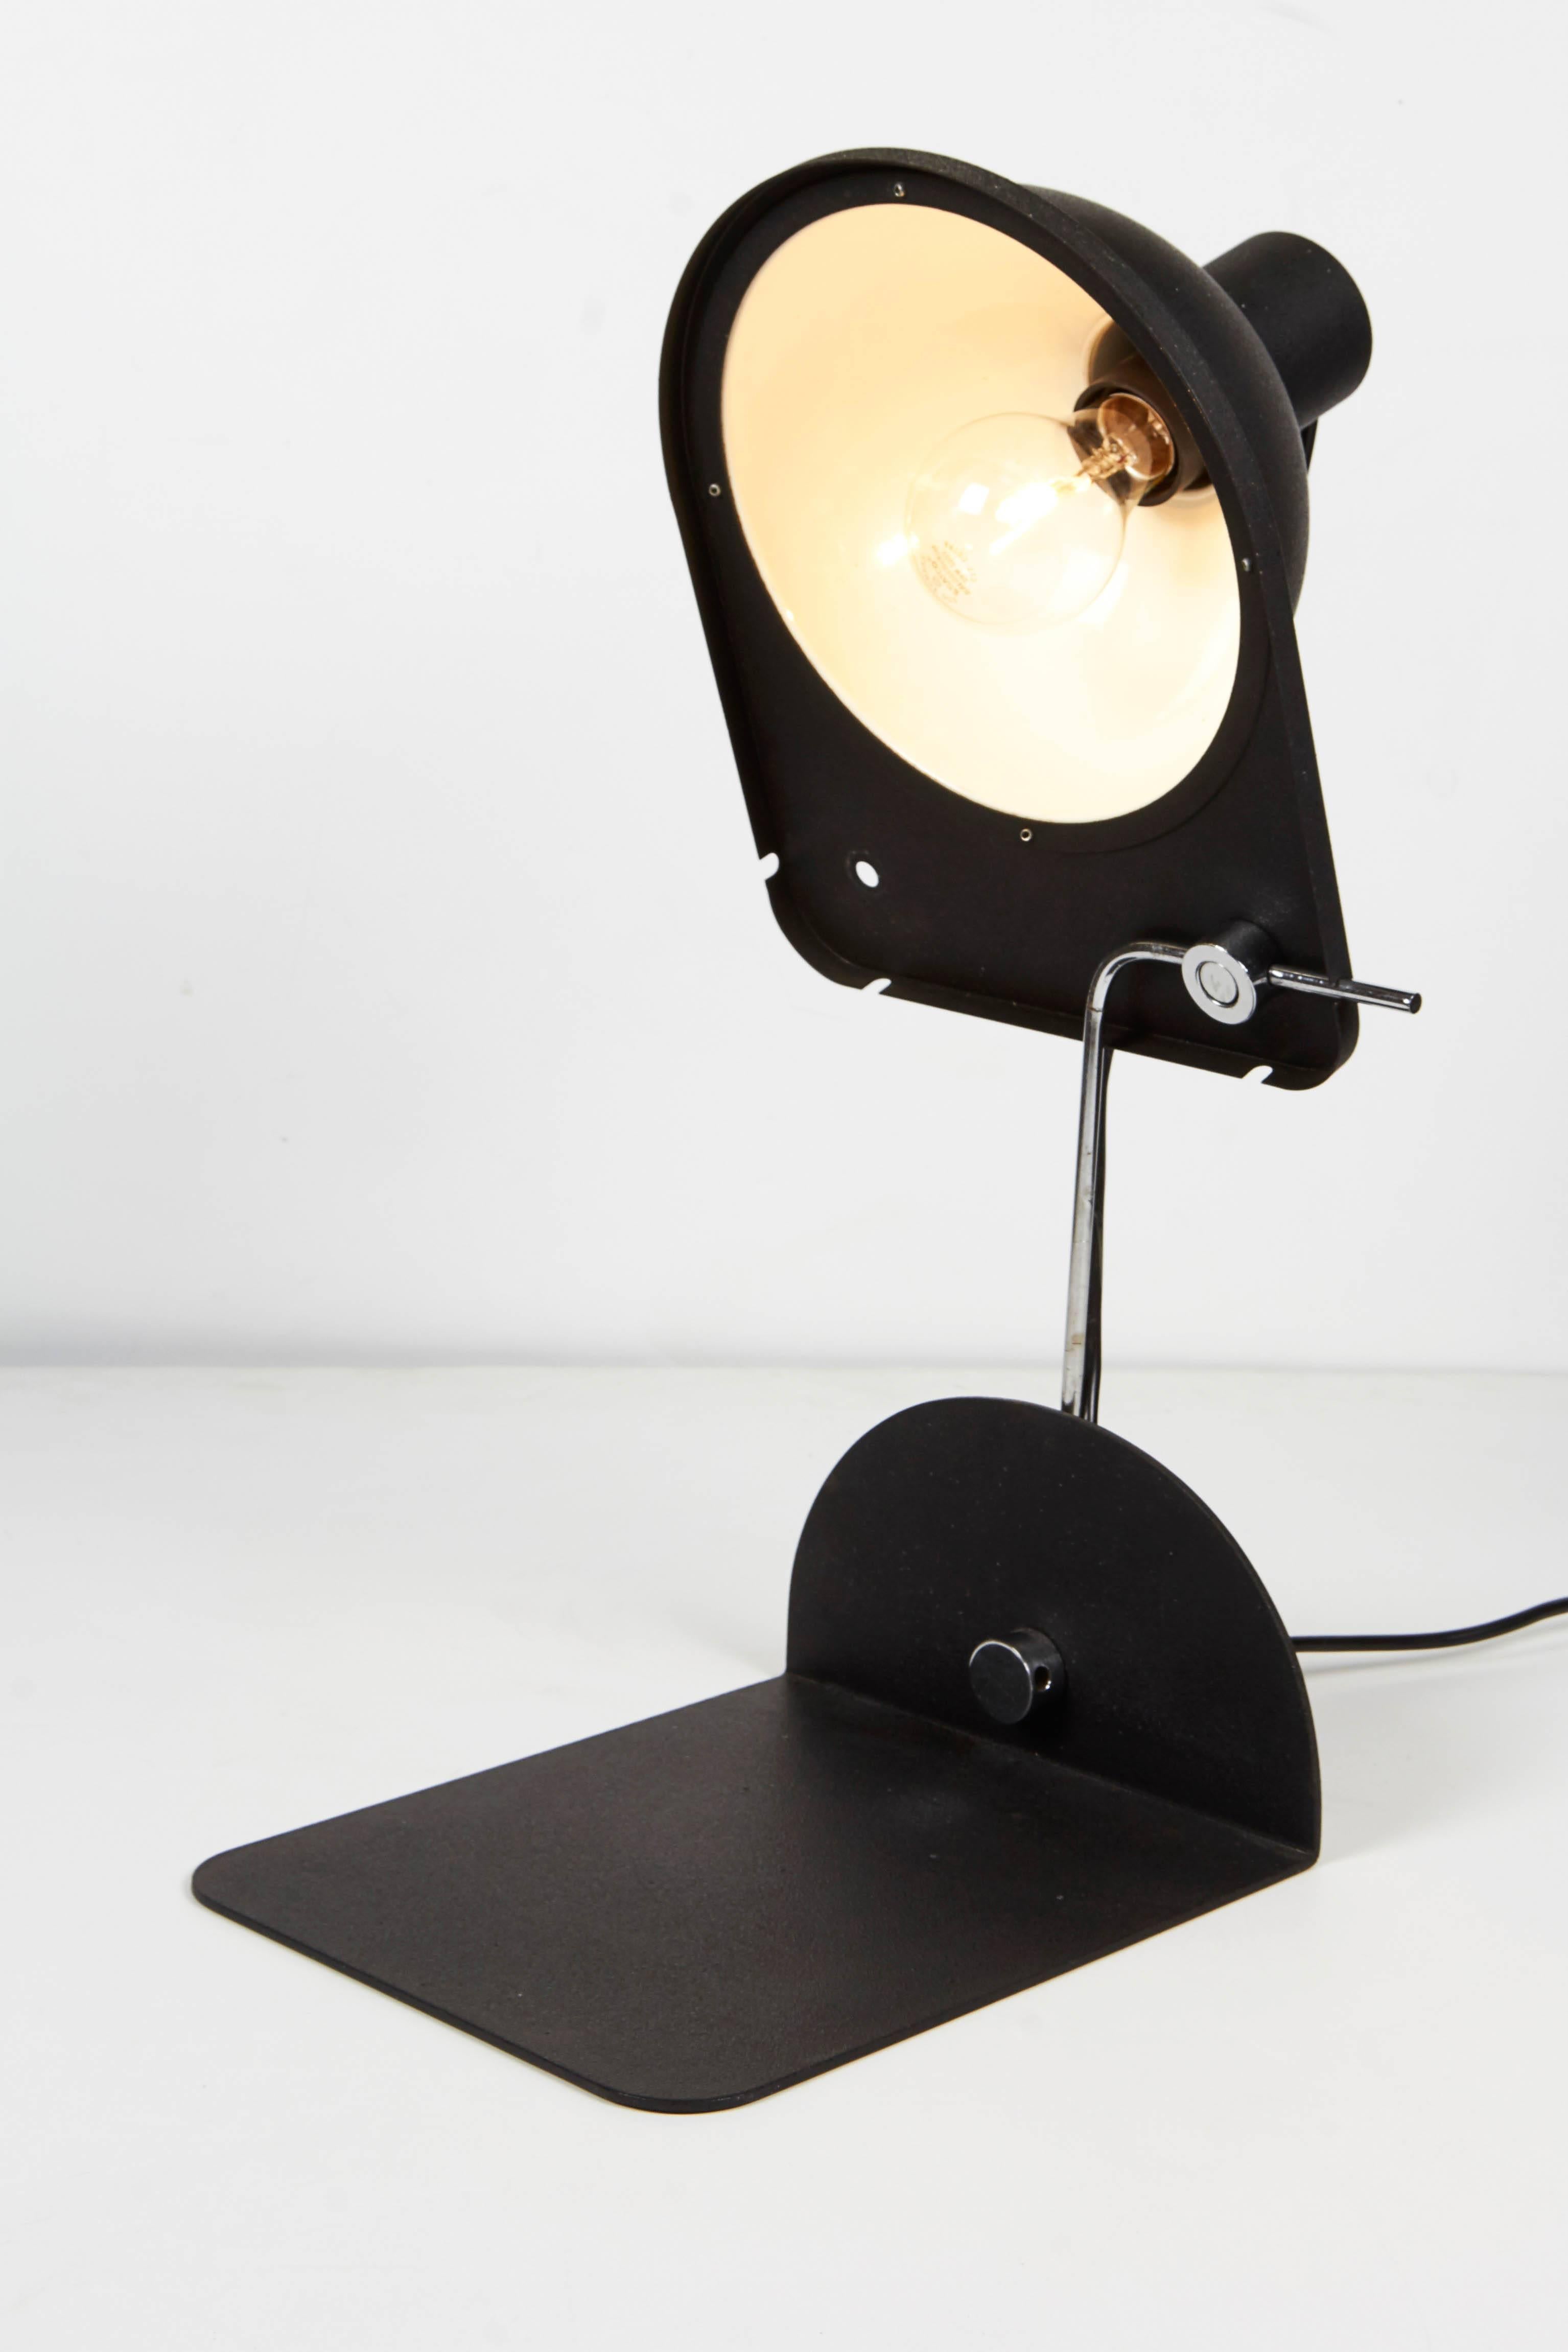 1970 schwarz satinierte Emaille und Chrom Schreibtischlampe oder Wandregal Lampe von italienischen Licht Firma Luci, gedruckt 